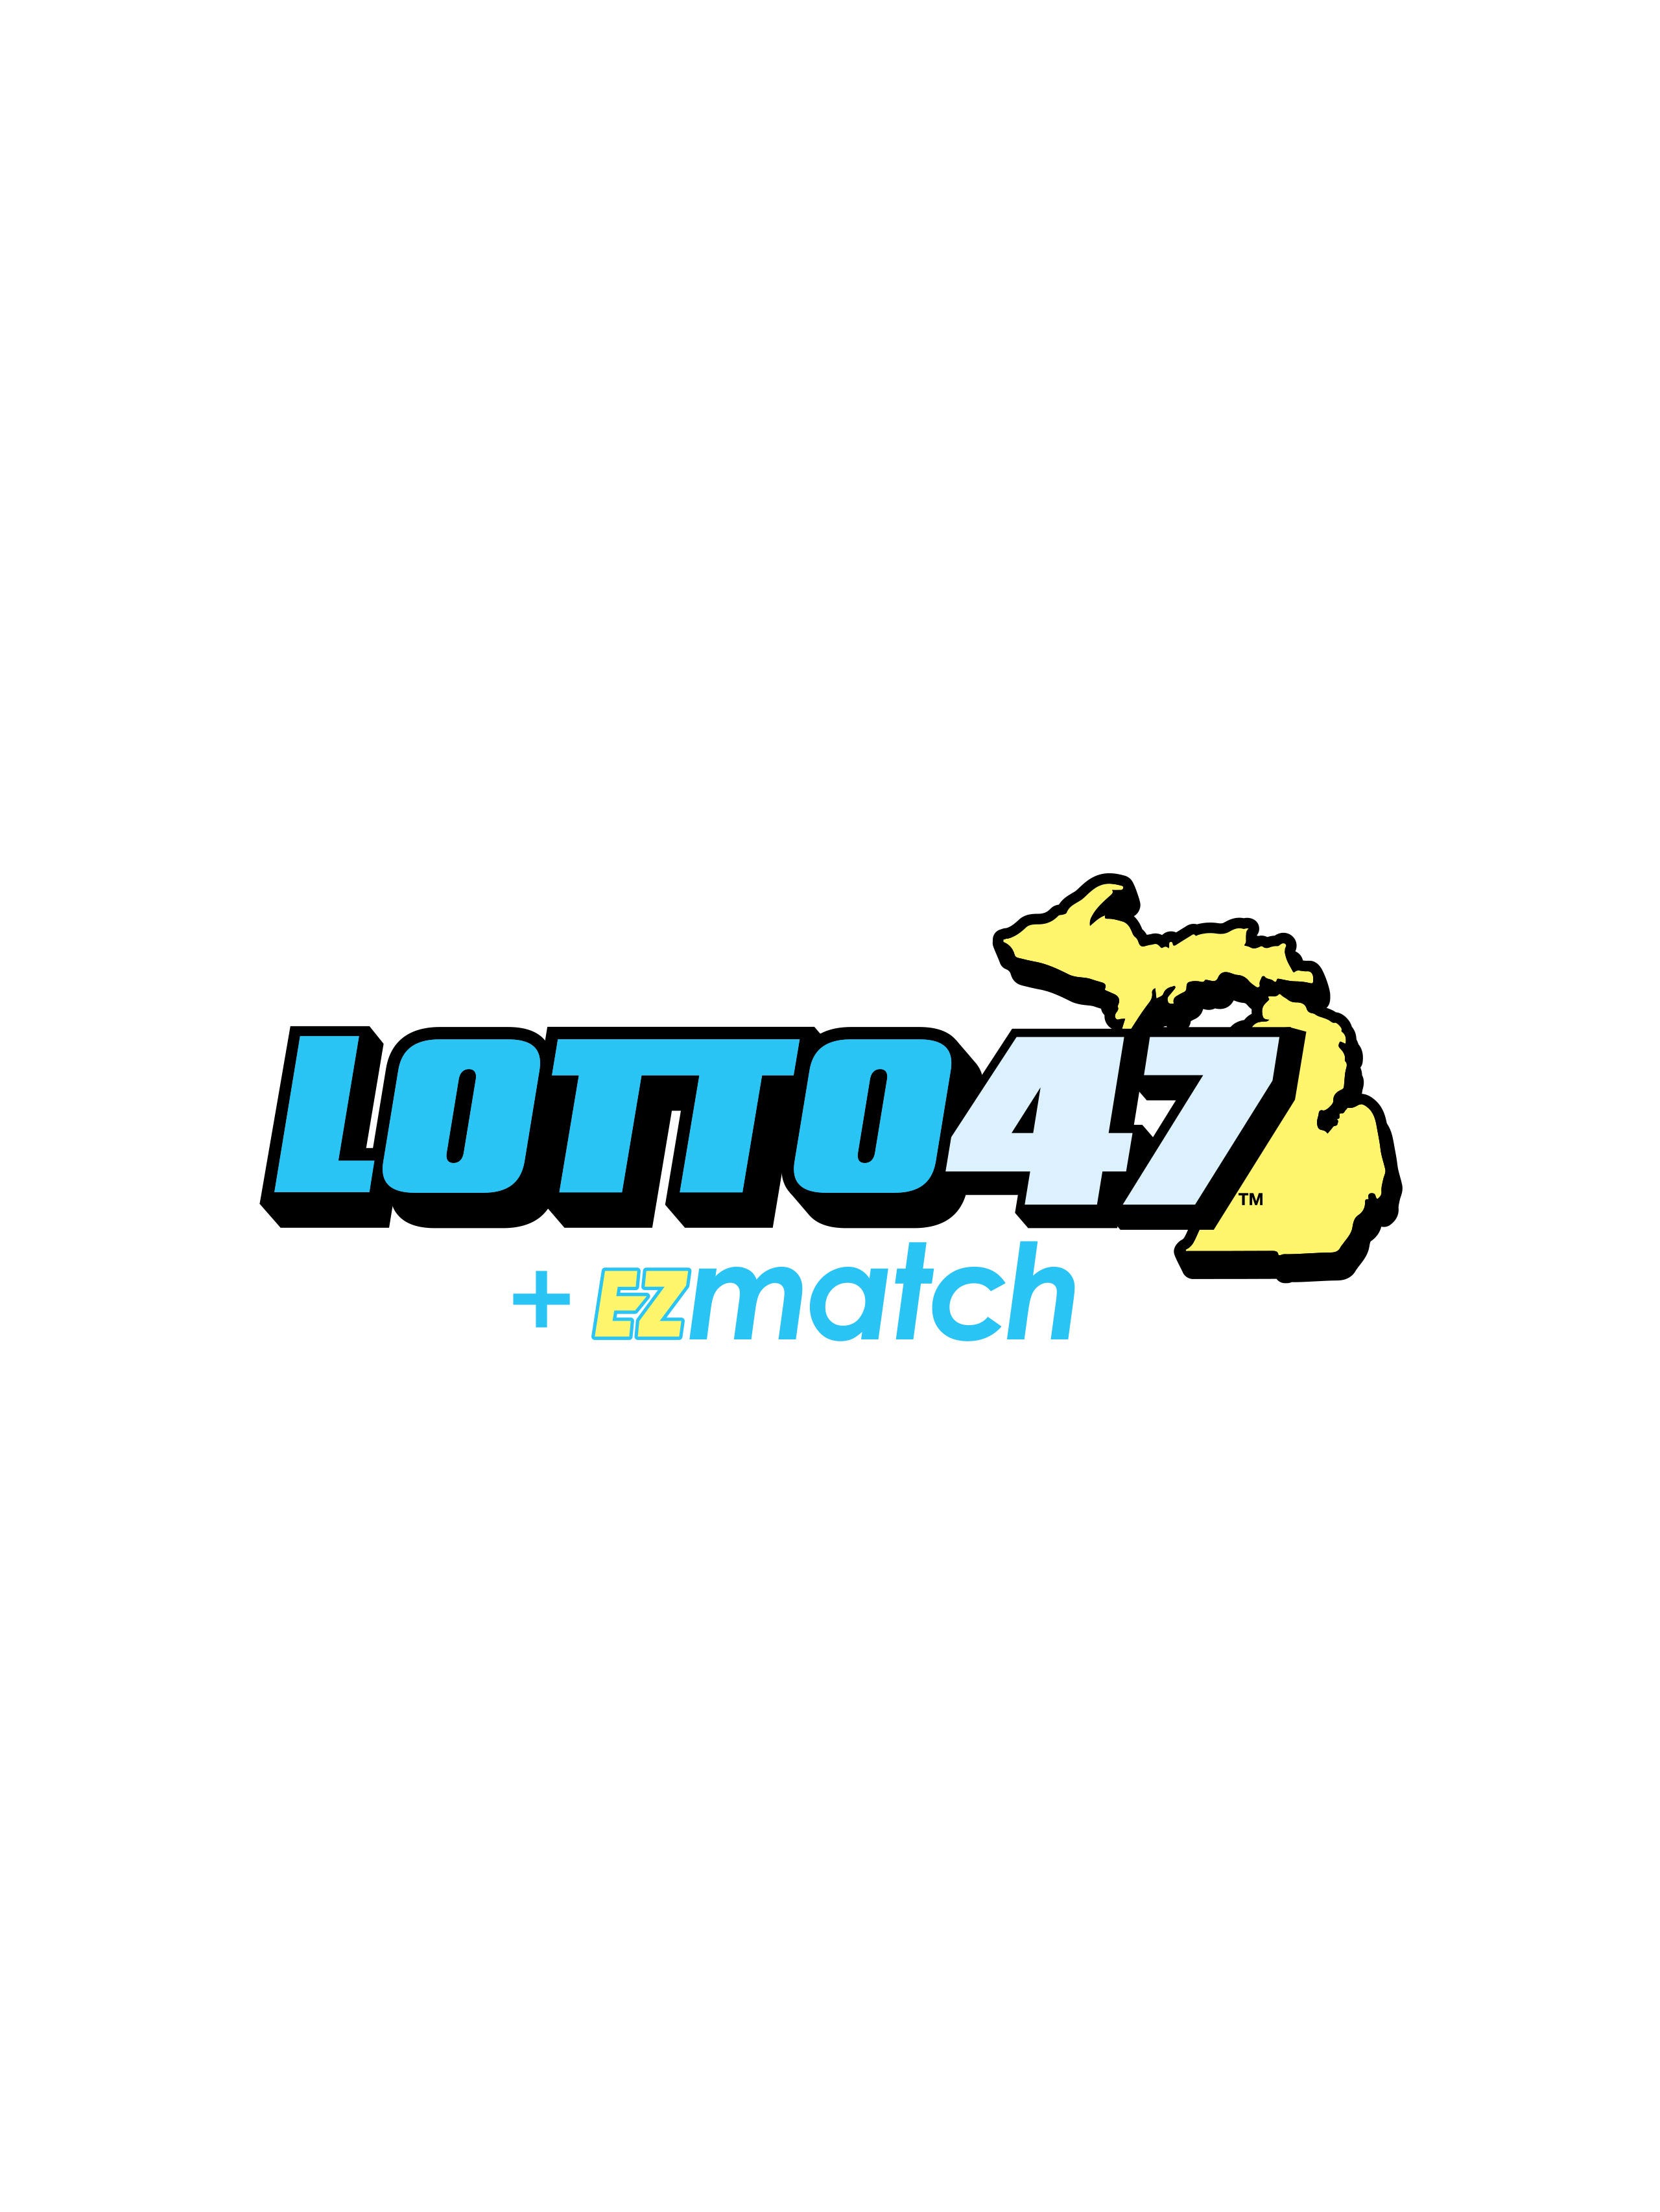 lotto 47 prizes